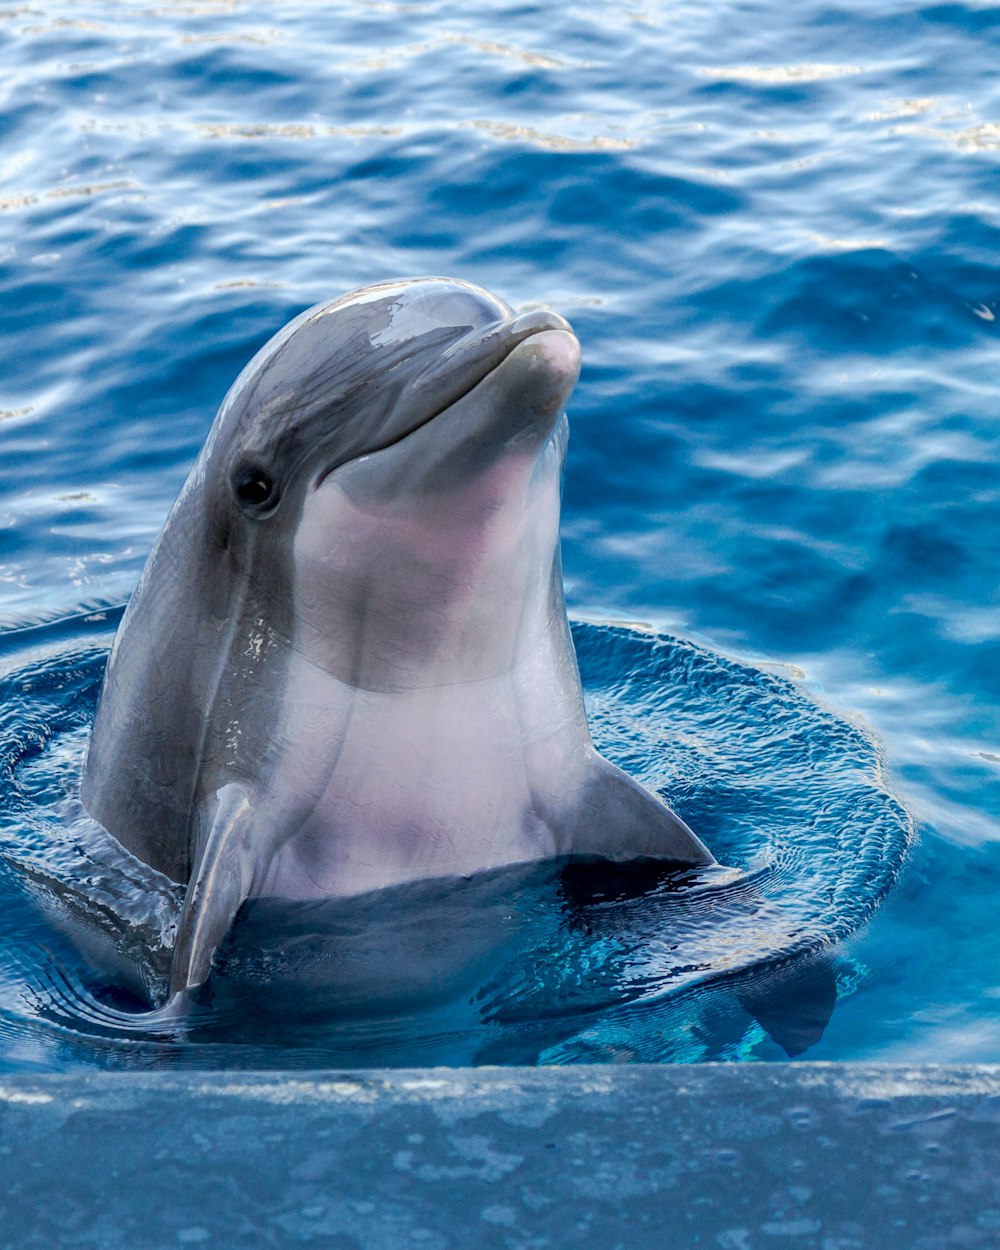 Fondos de pantalla de delfines: Descarga HD gratuita [500+ HQ] | Unsplash